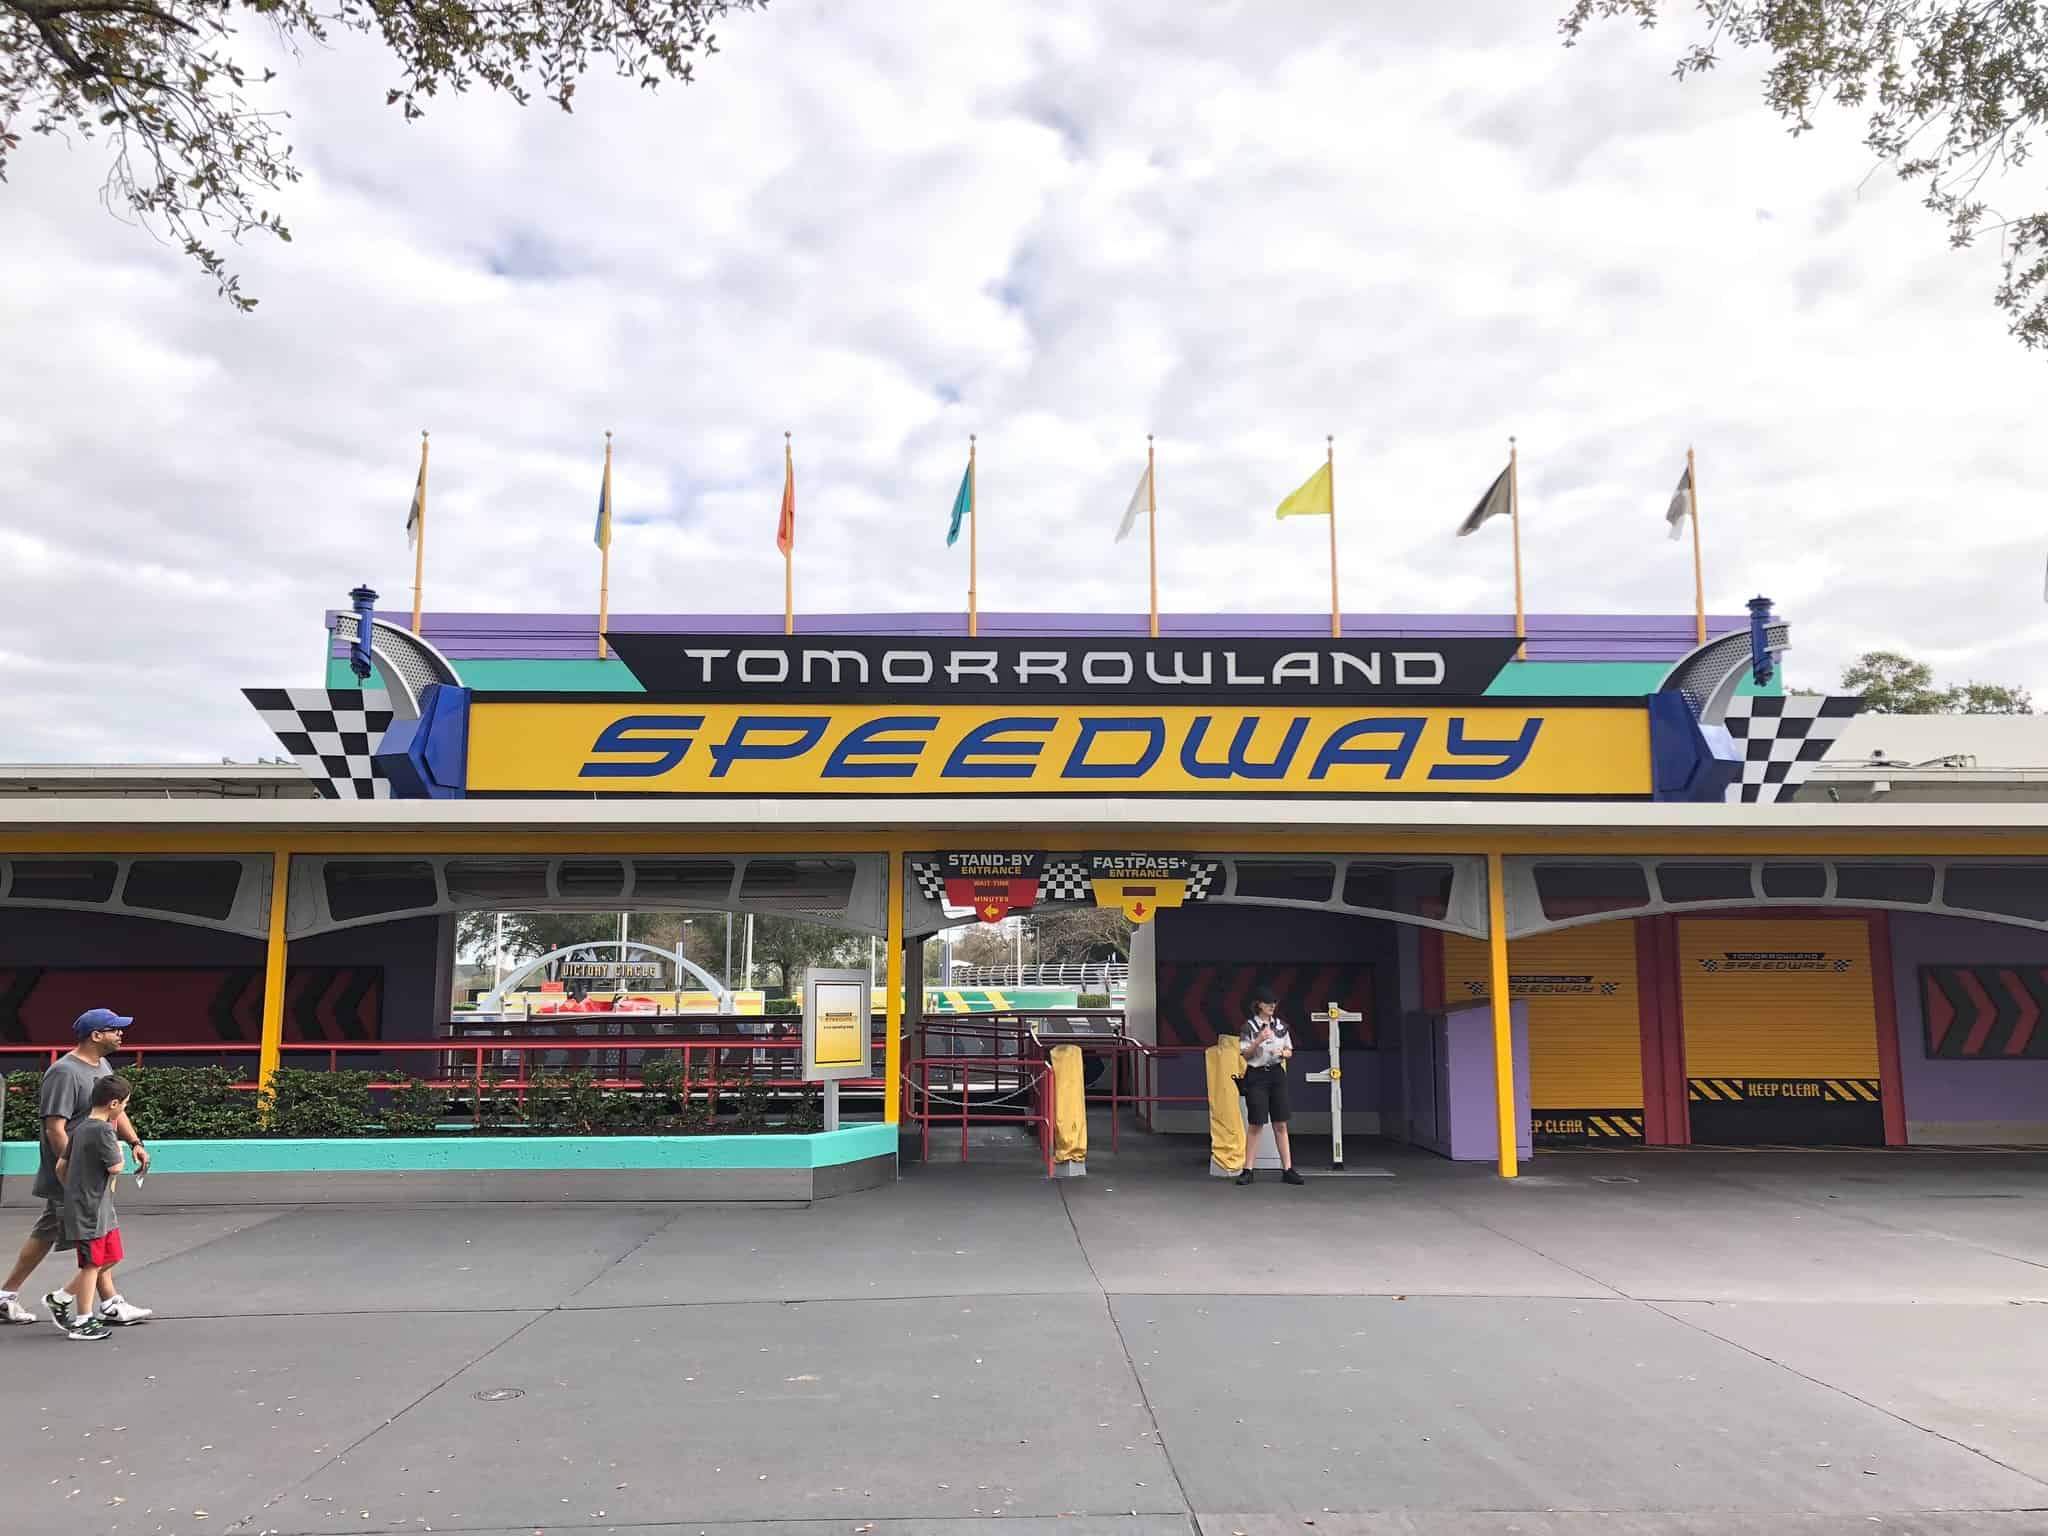 Tomorrowland Speedway - Tour du royaume magique